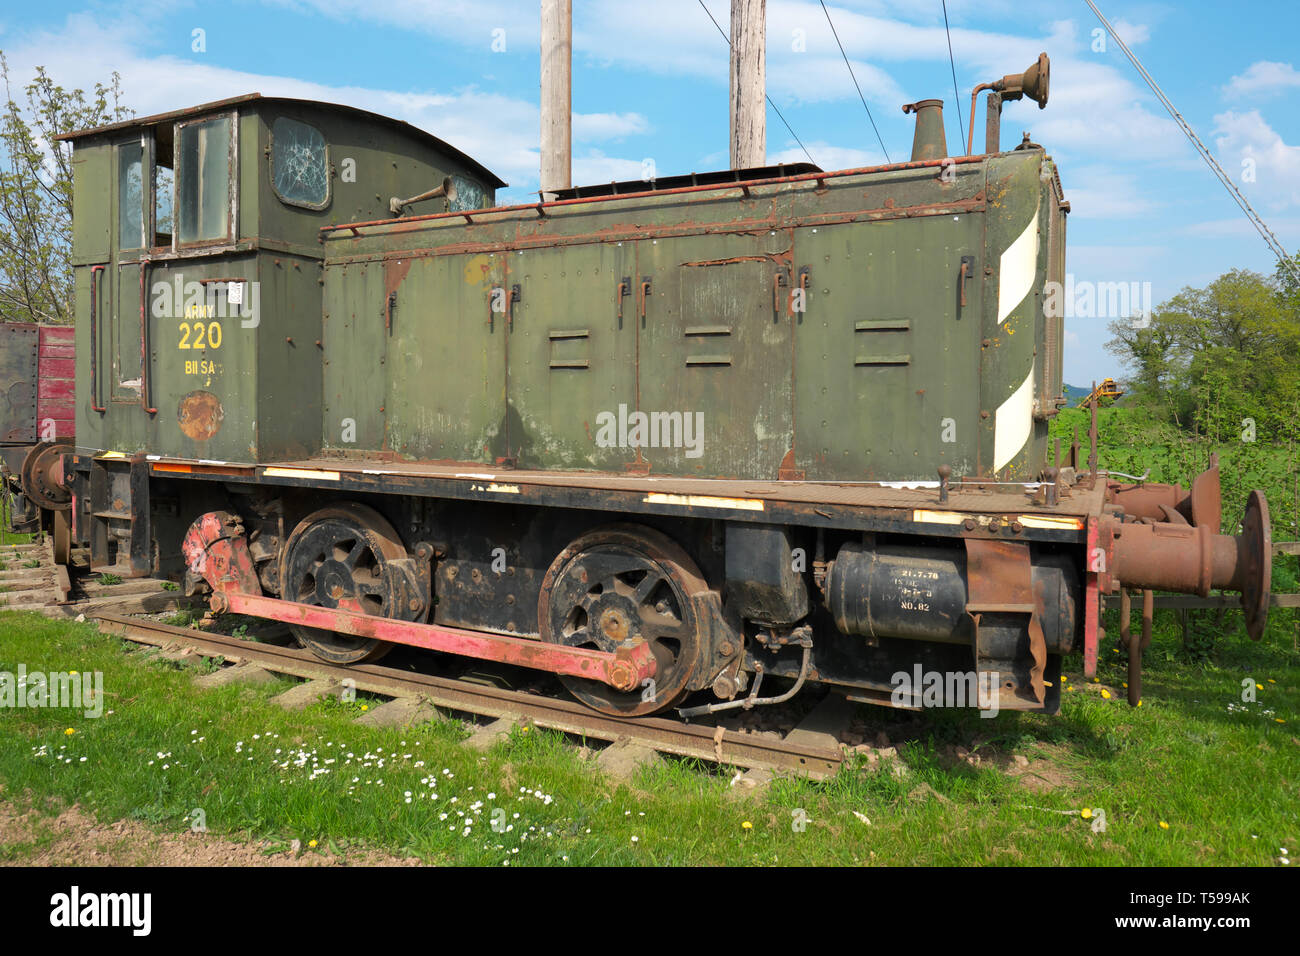 Rotherwas, Hereford, UK Ex locomotive locomotive de l'Armée numéro 220 a été construit par Andrew Barclay Ltd en 1941 pour le Département de la guerre PENDANT LA SECONDE GUERRE MONDIALE Banque D'Images